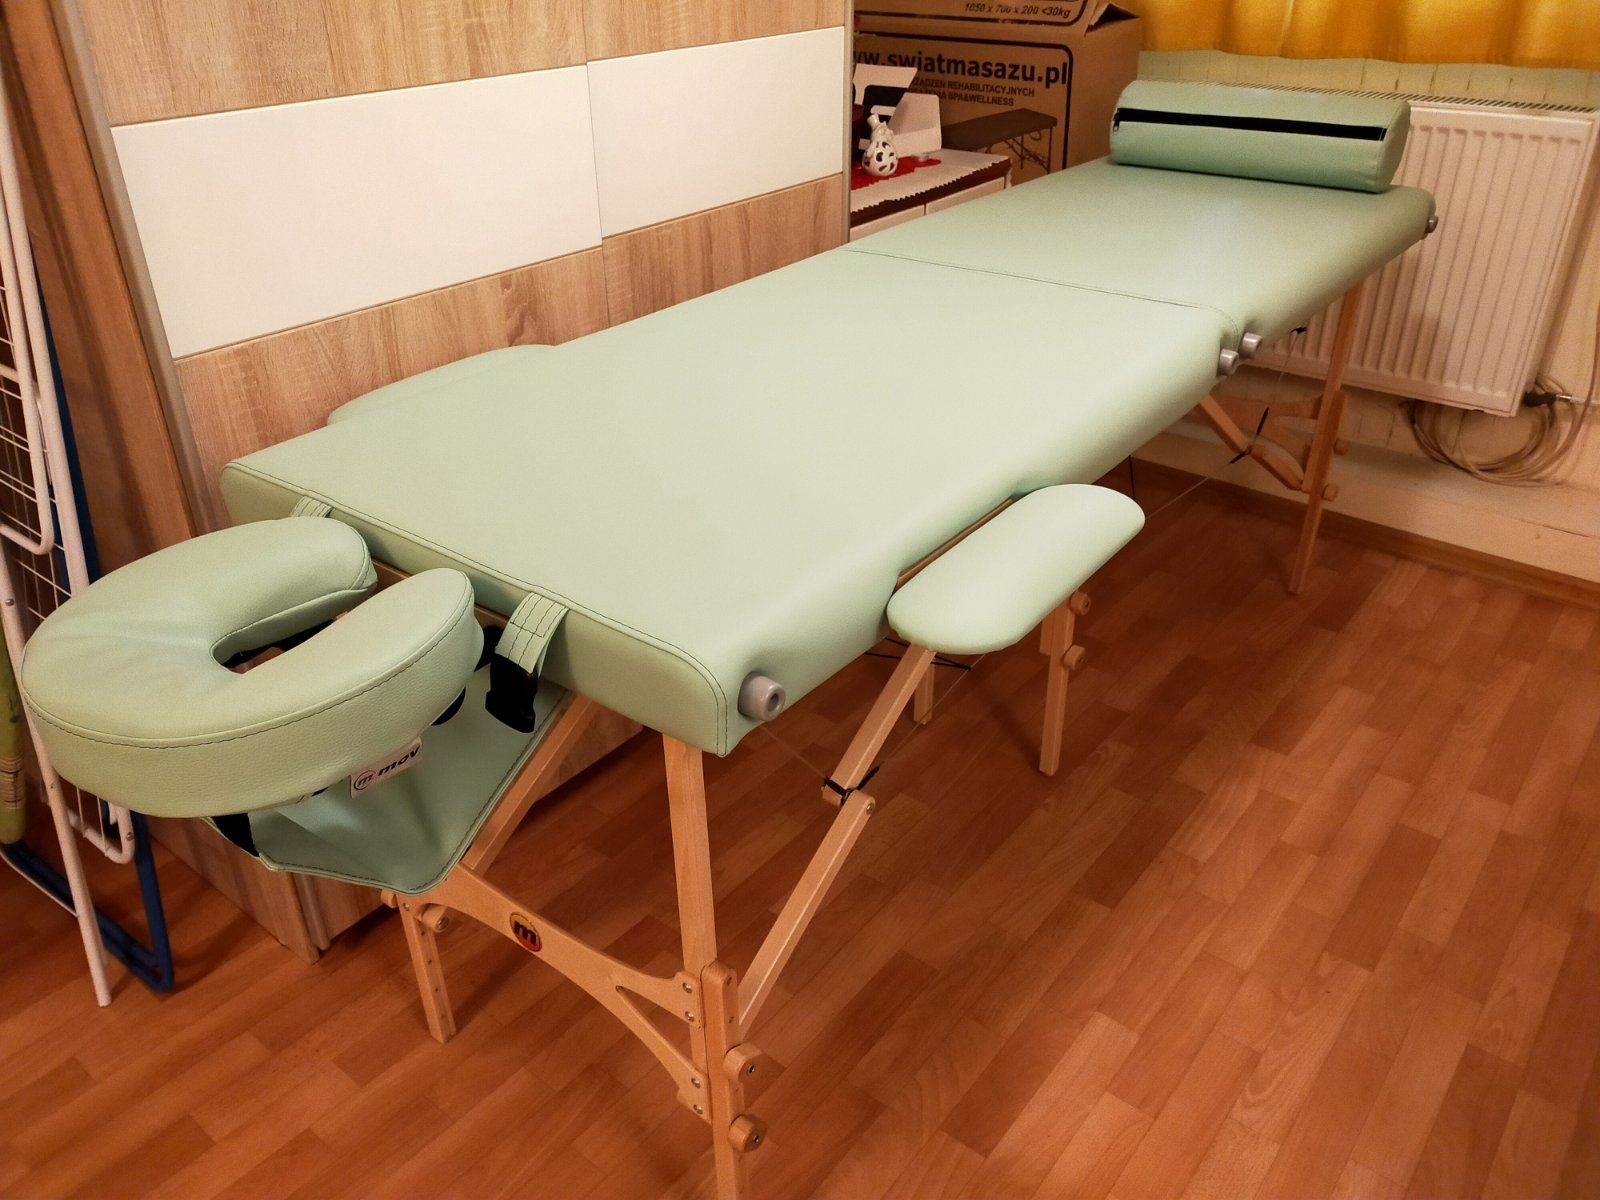 Stół składany do masażu